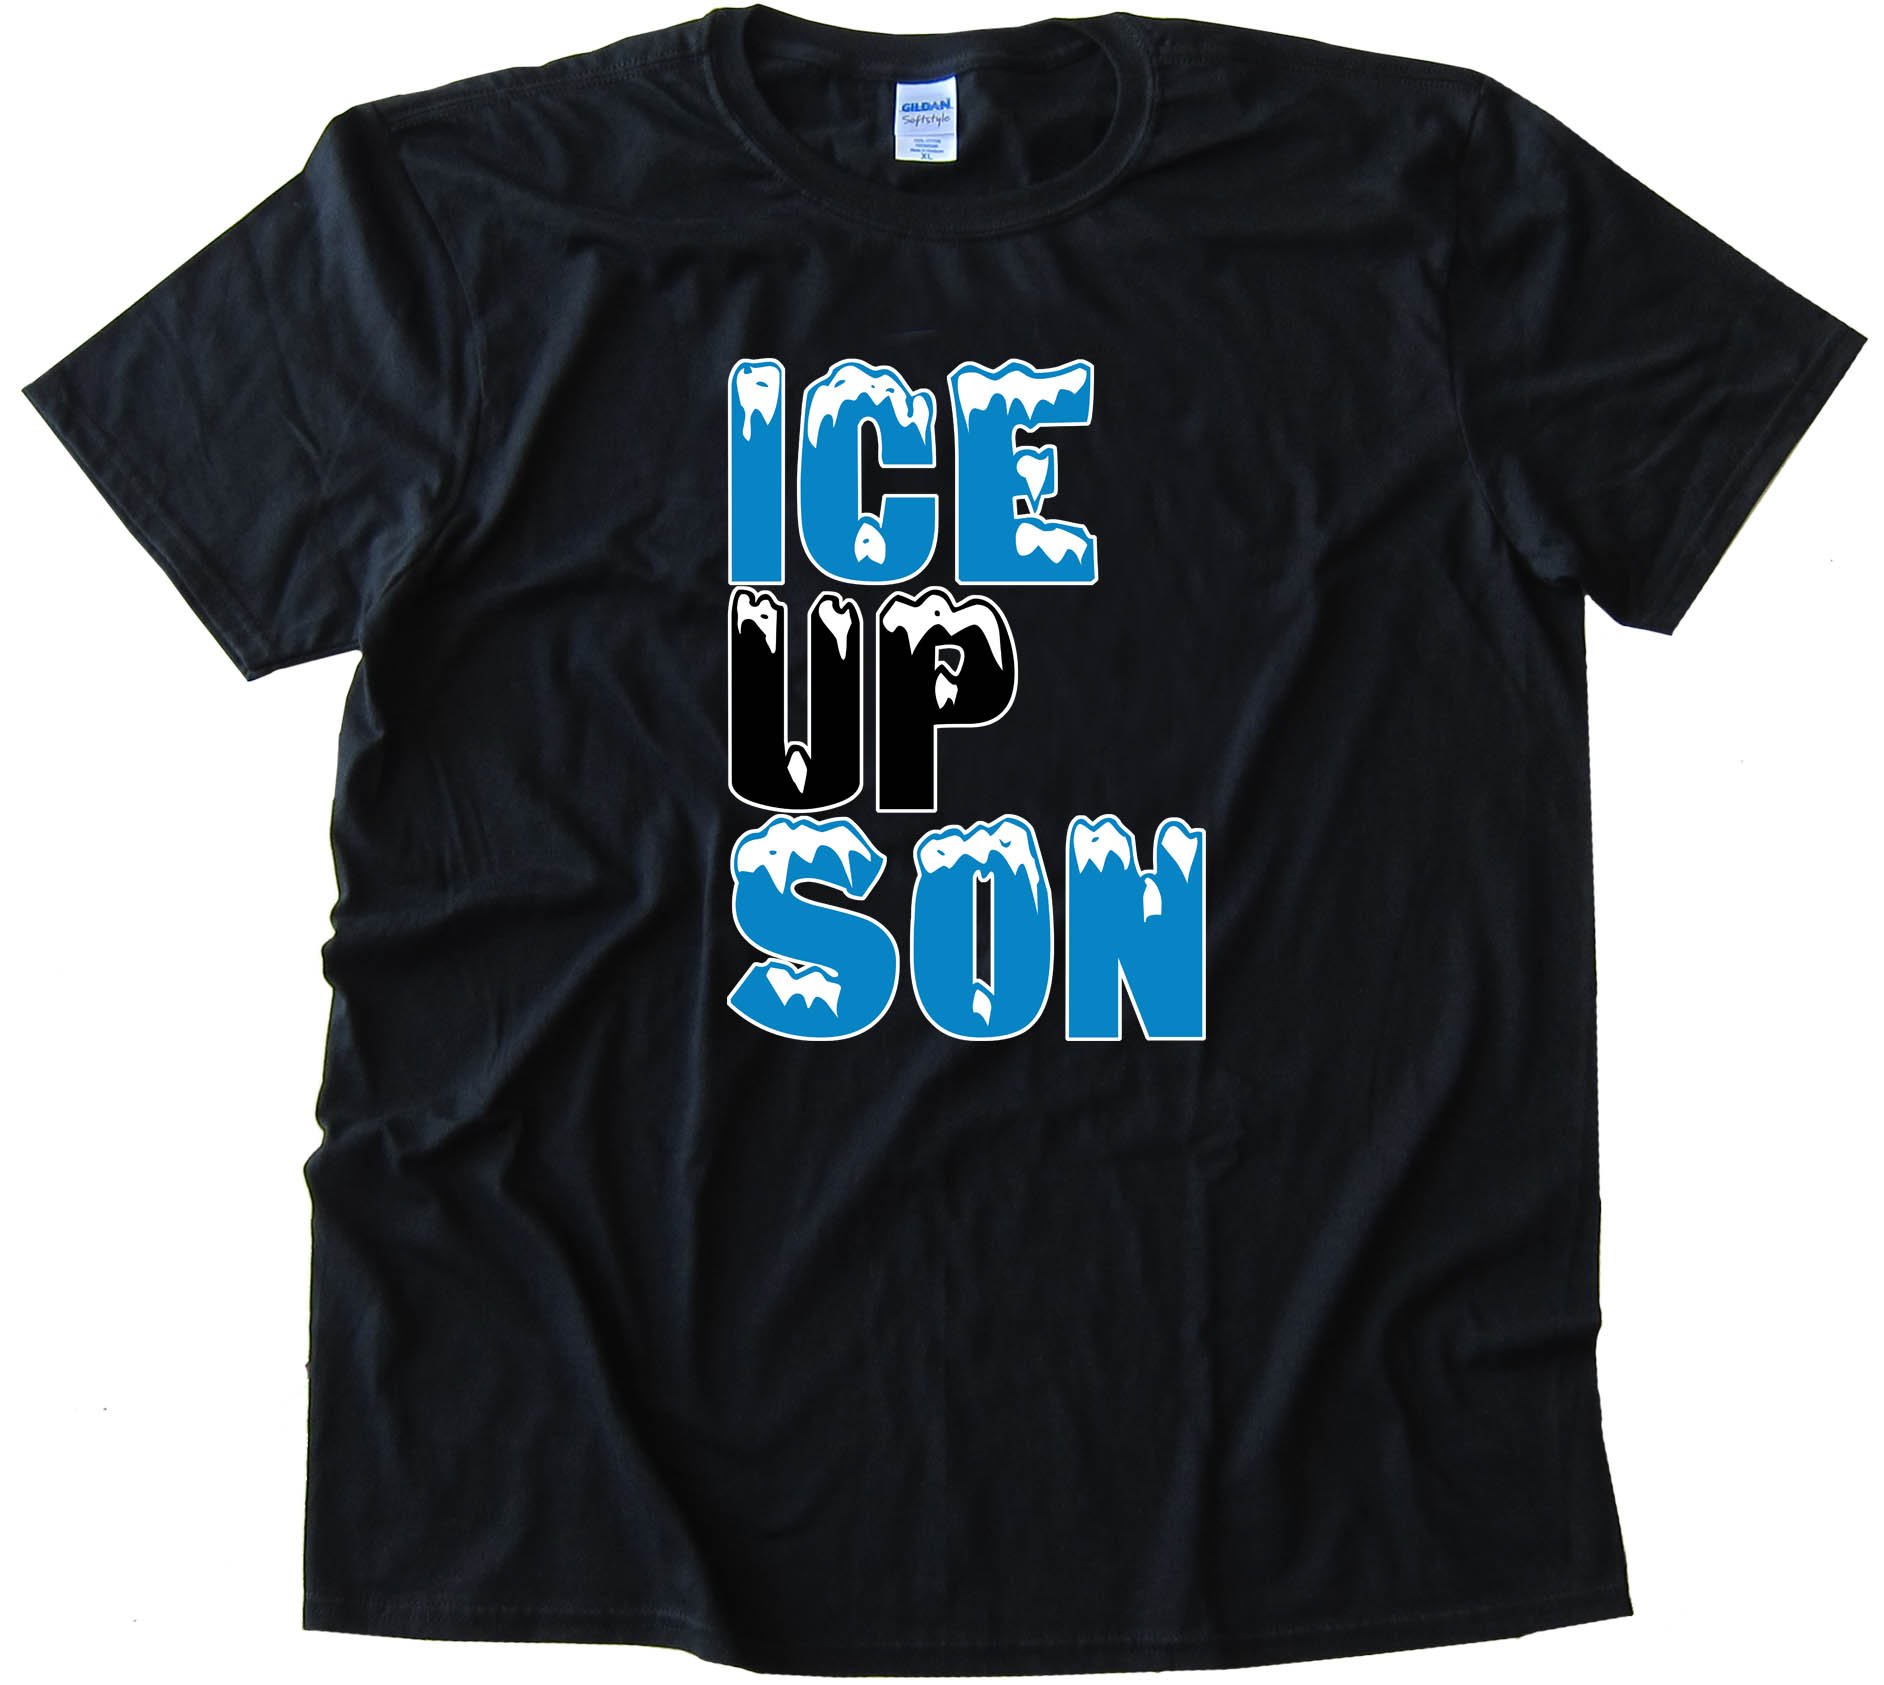 Steve Smith Ice Up Son - Tee Shirt